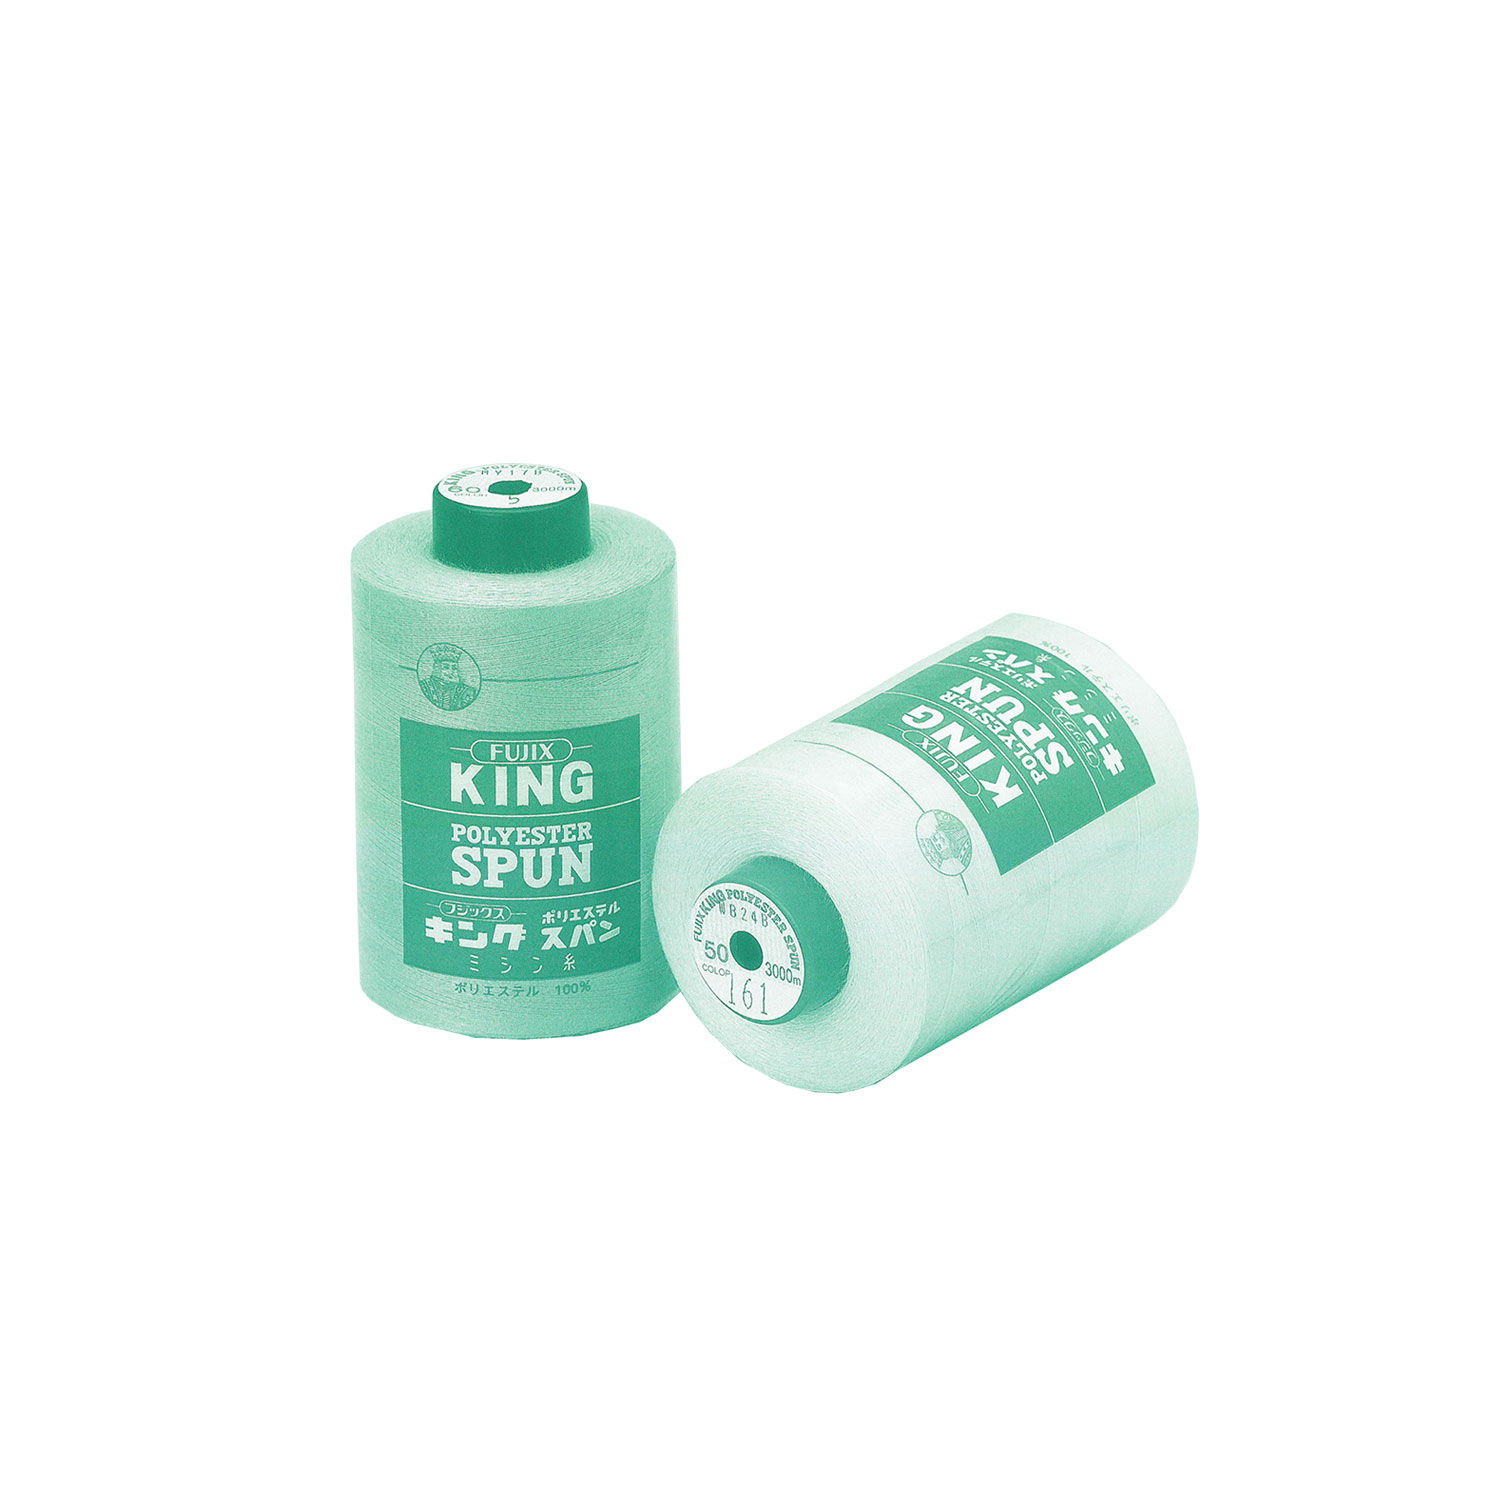 キングスパン King Polyester Spun(Industrial)[Thread] FUJIX